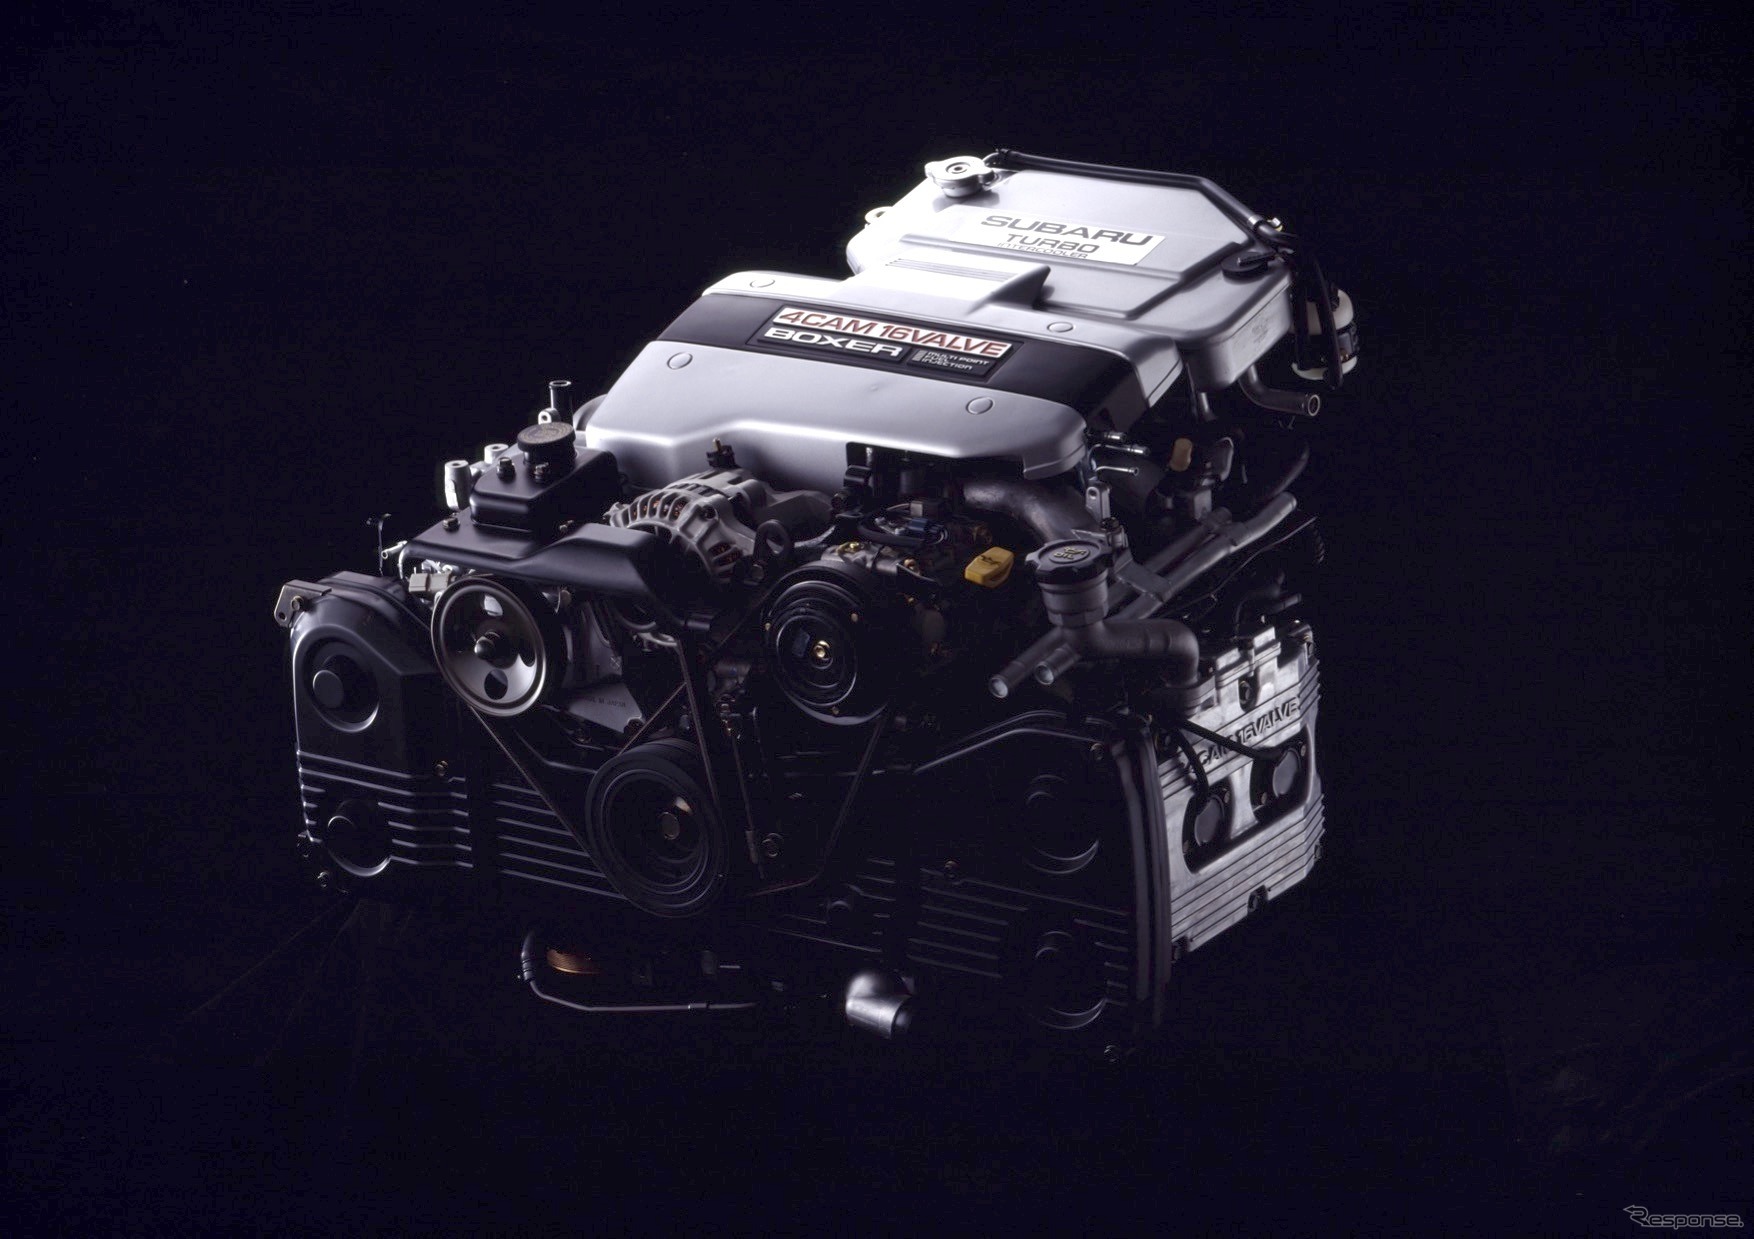 1989年式レガシィに搭載されたEJ20ターボエンジン。